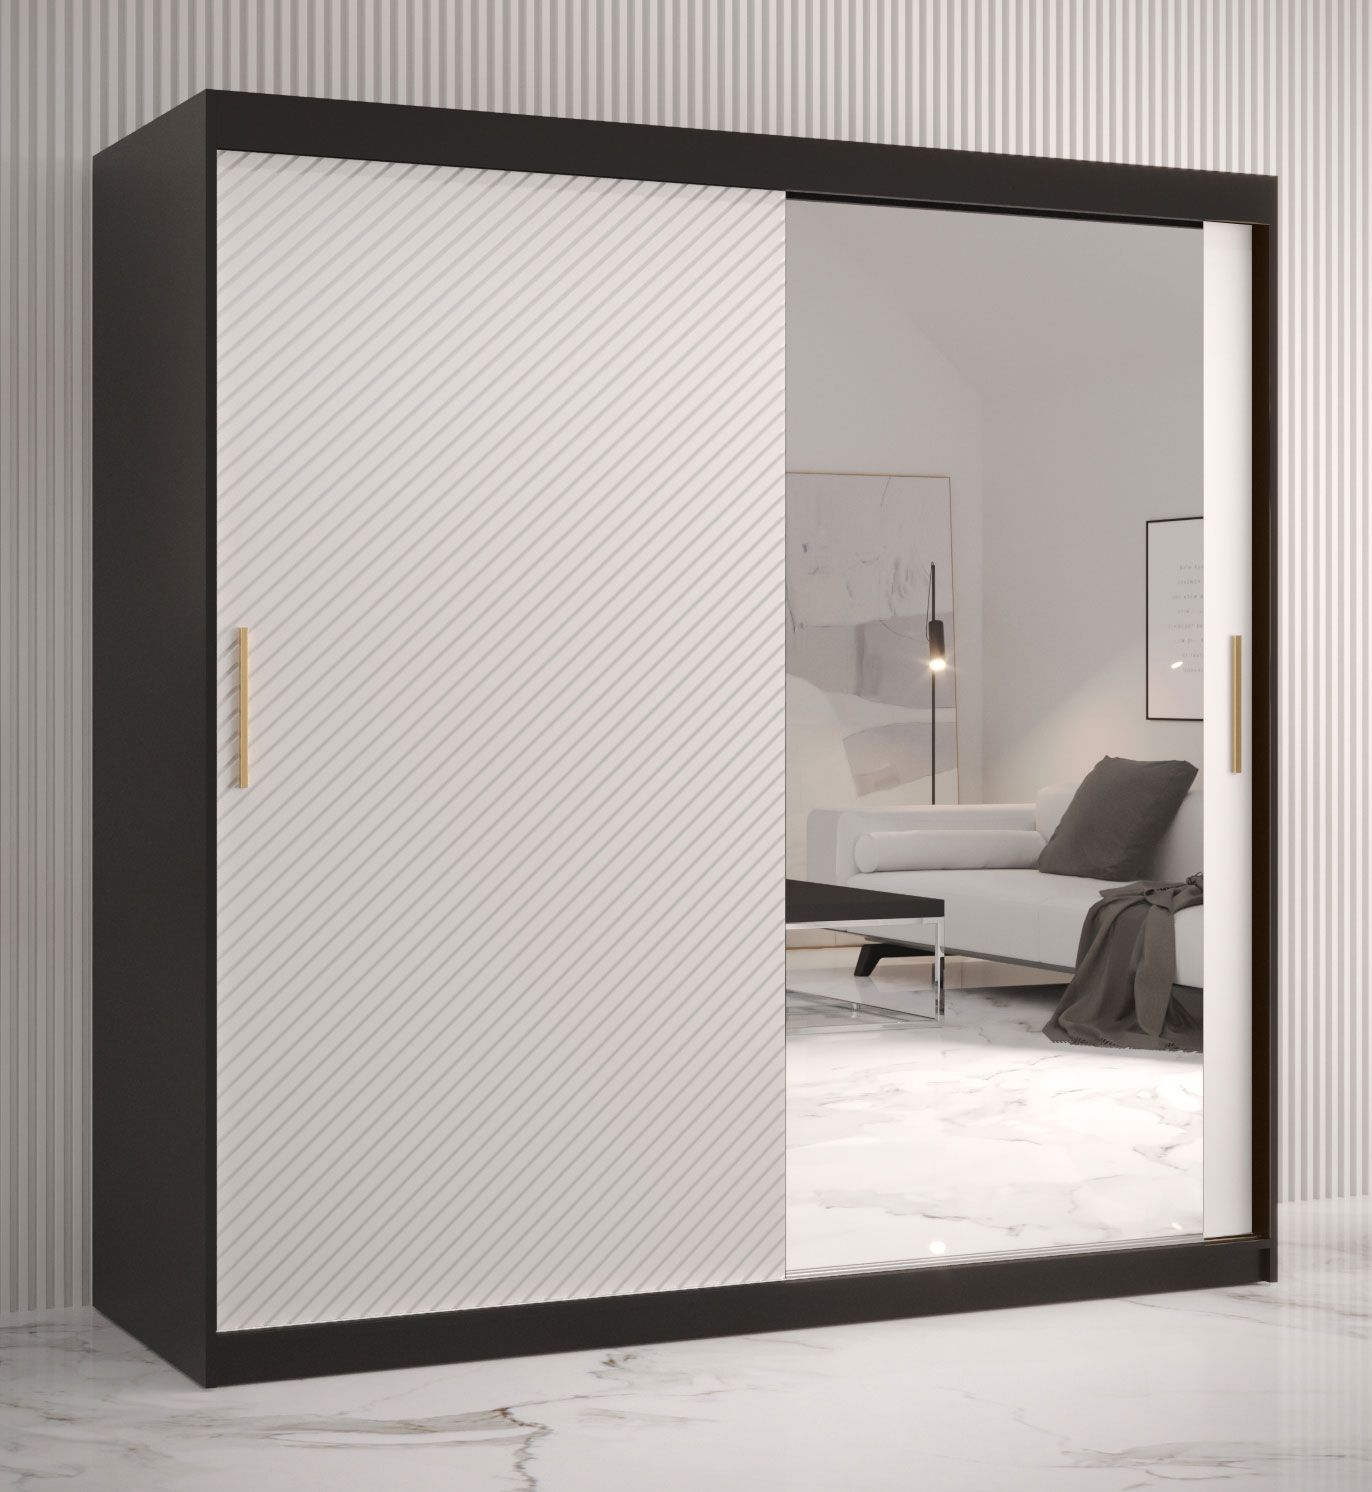 Kledingkast in eenvoudig Balmenhorn 39-design, kleur: mat zwart / mat wit - afmetingen: 200 x 180 x 62 cm (H x B x D), met één deur met spiegel